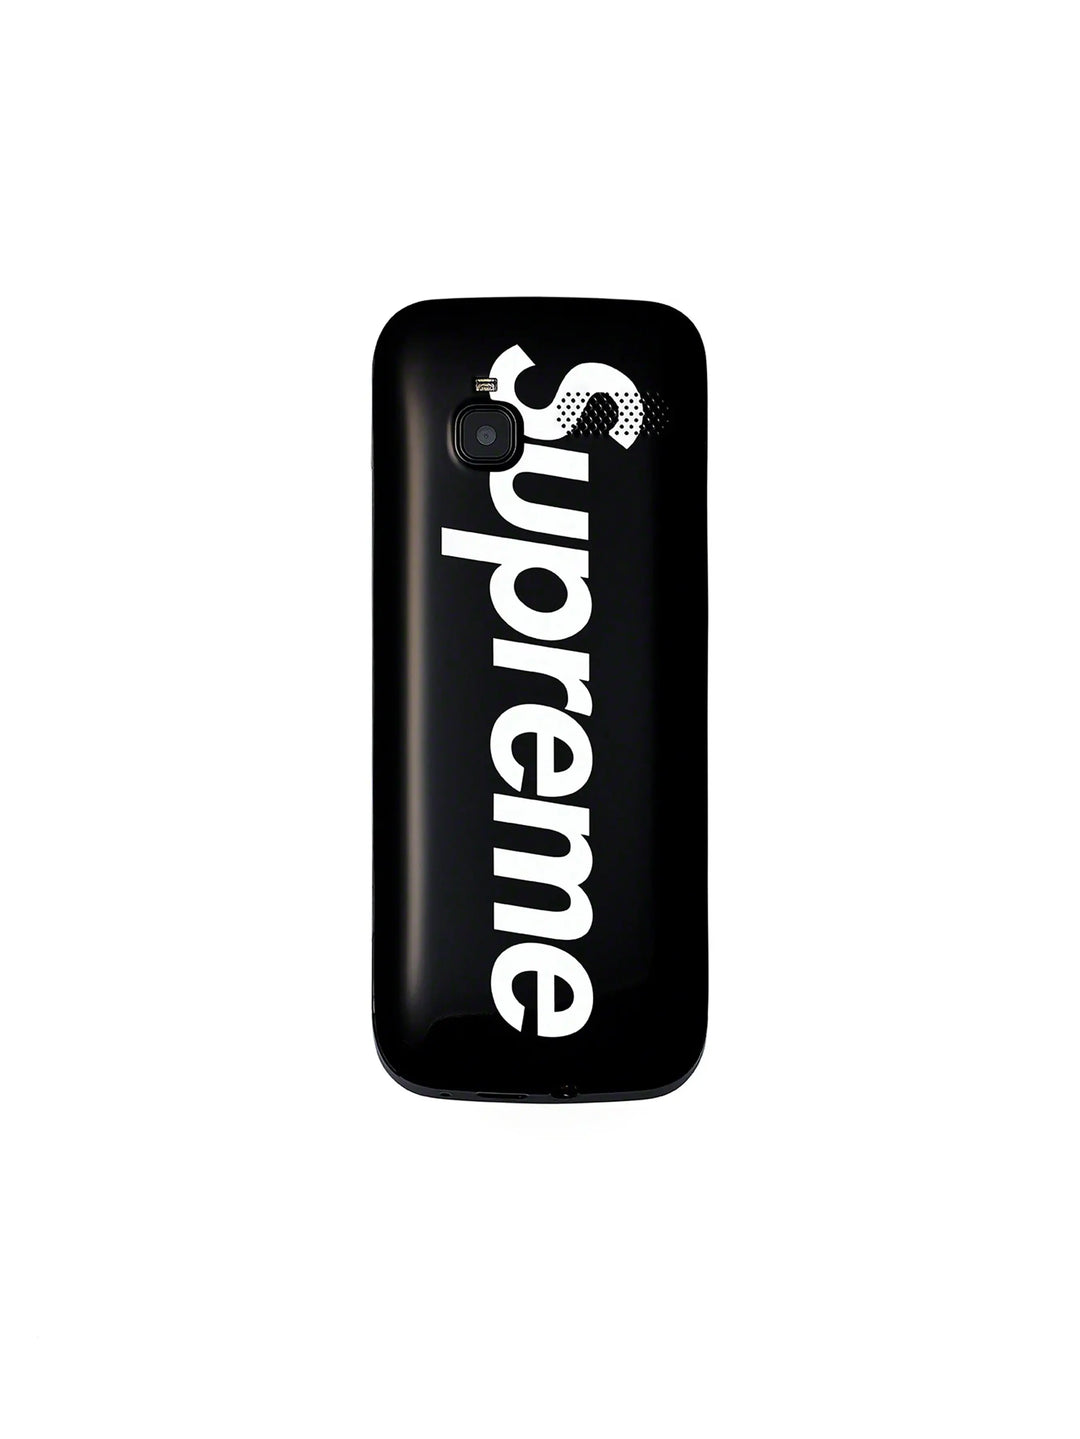 Supreme BLU Burner Phone Black in Melbourne, Australia - Prior